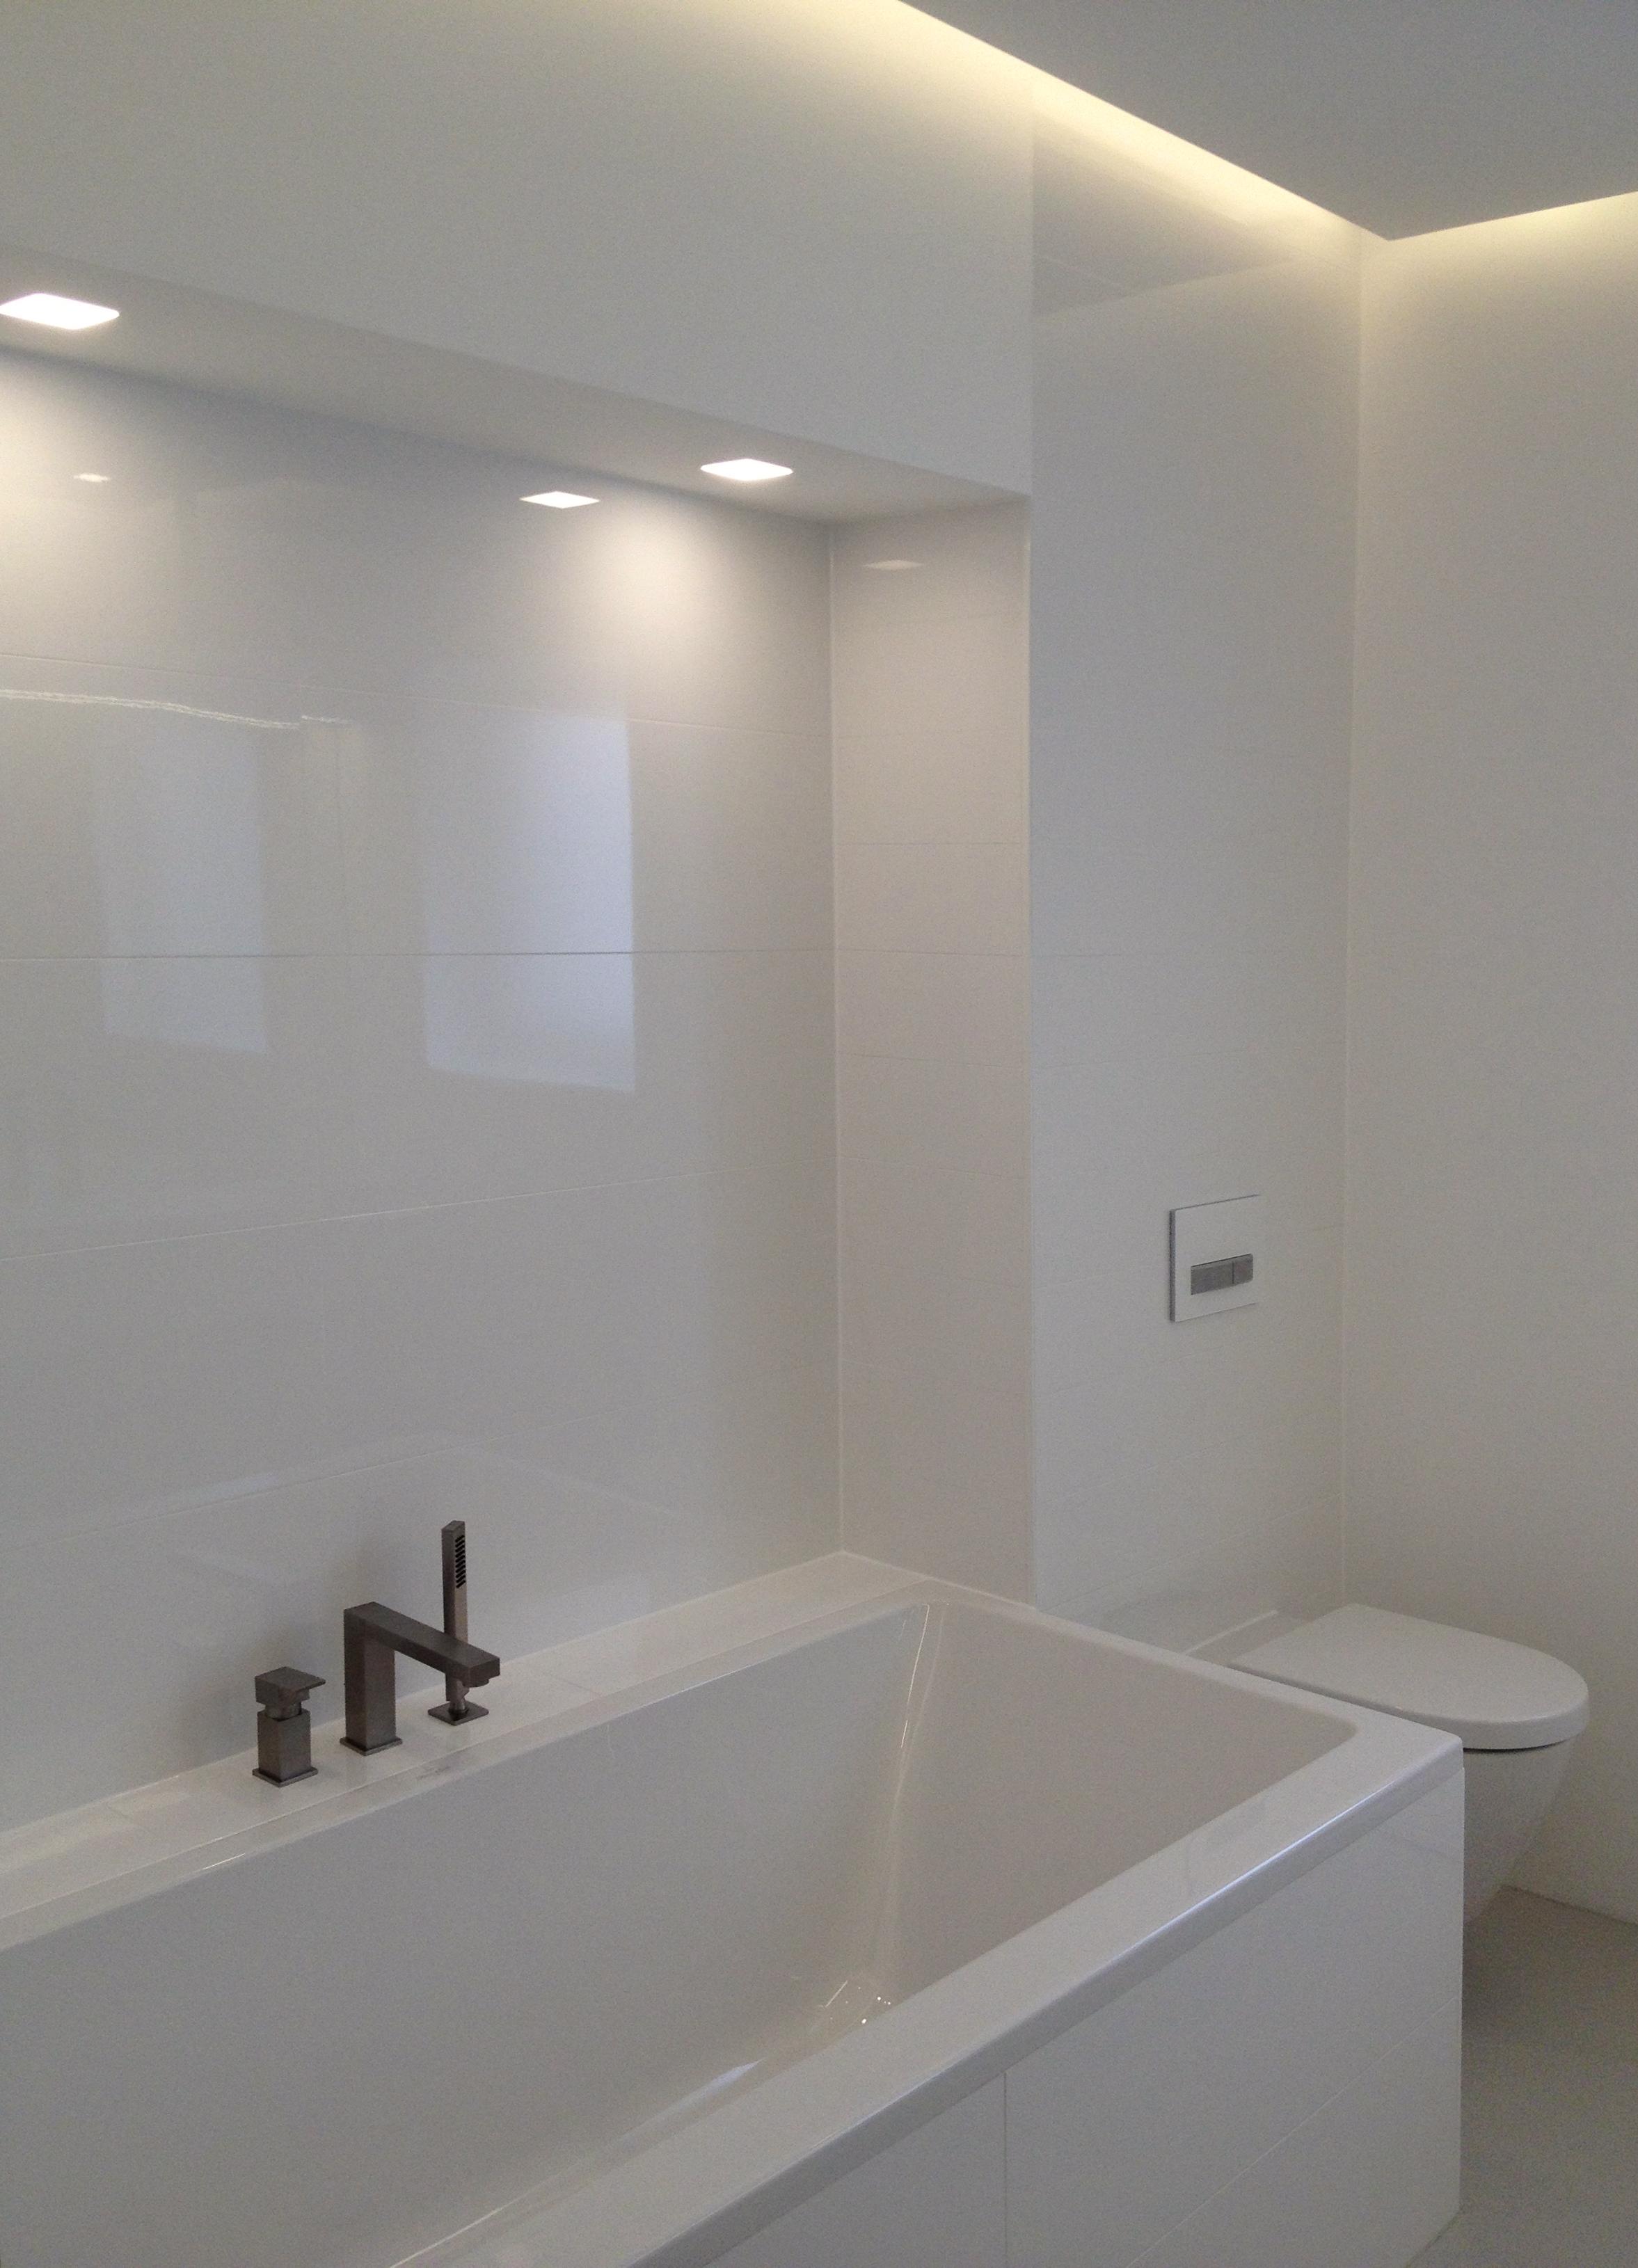 Weniger ist Mehr #badewanne #badezimmer #minimalistisch ©privates Wohnhaus